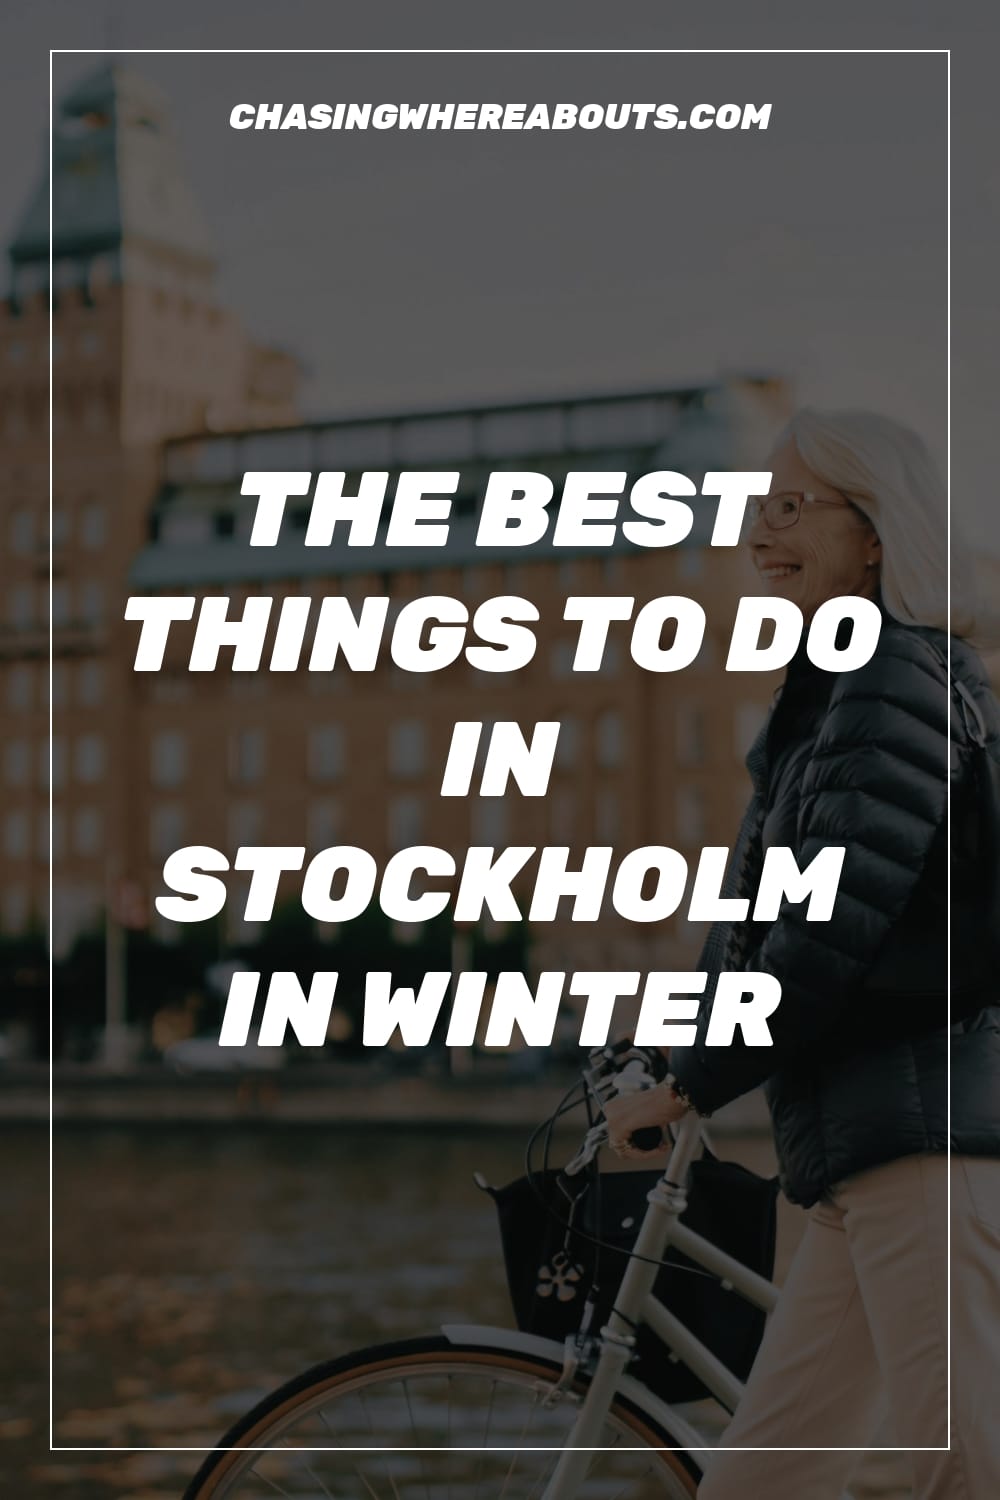 visit stockholm in winter